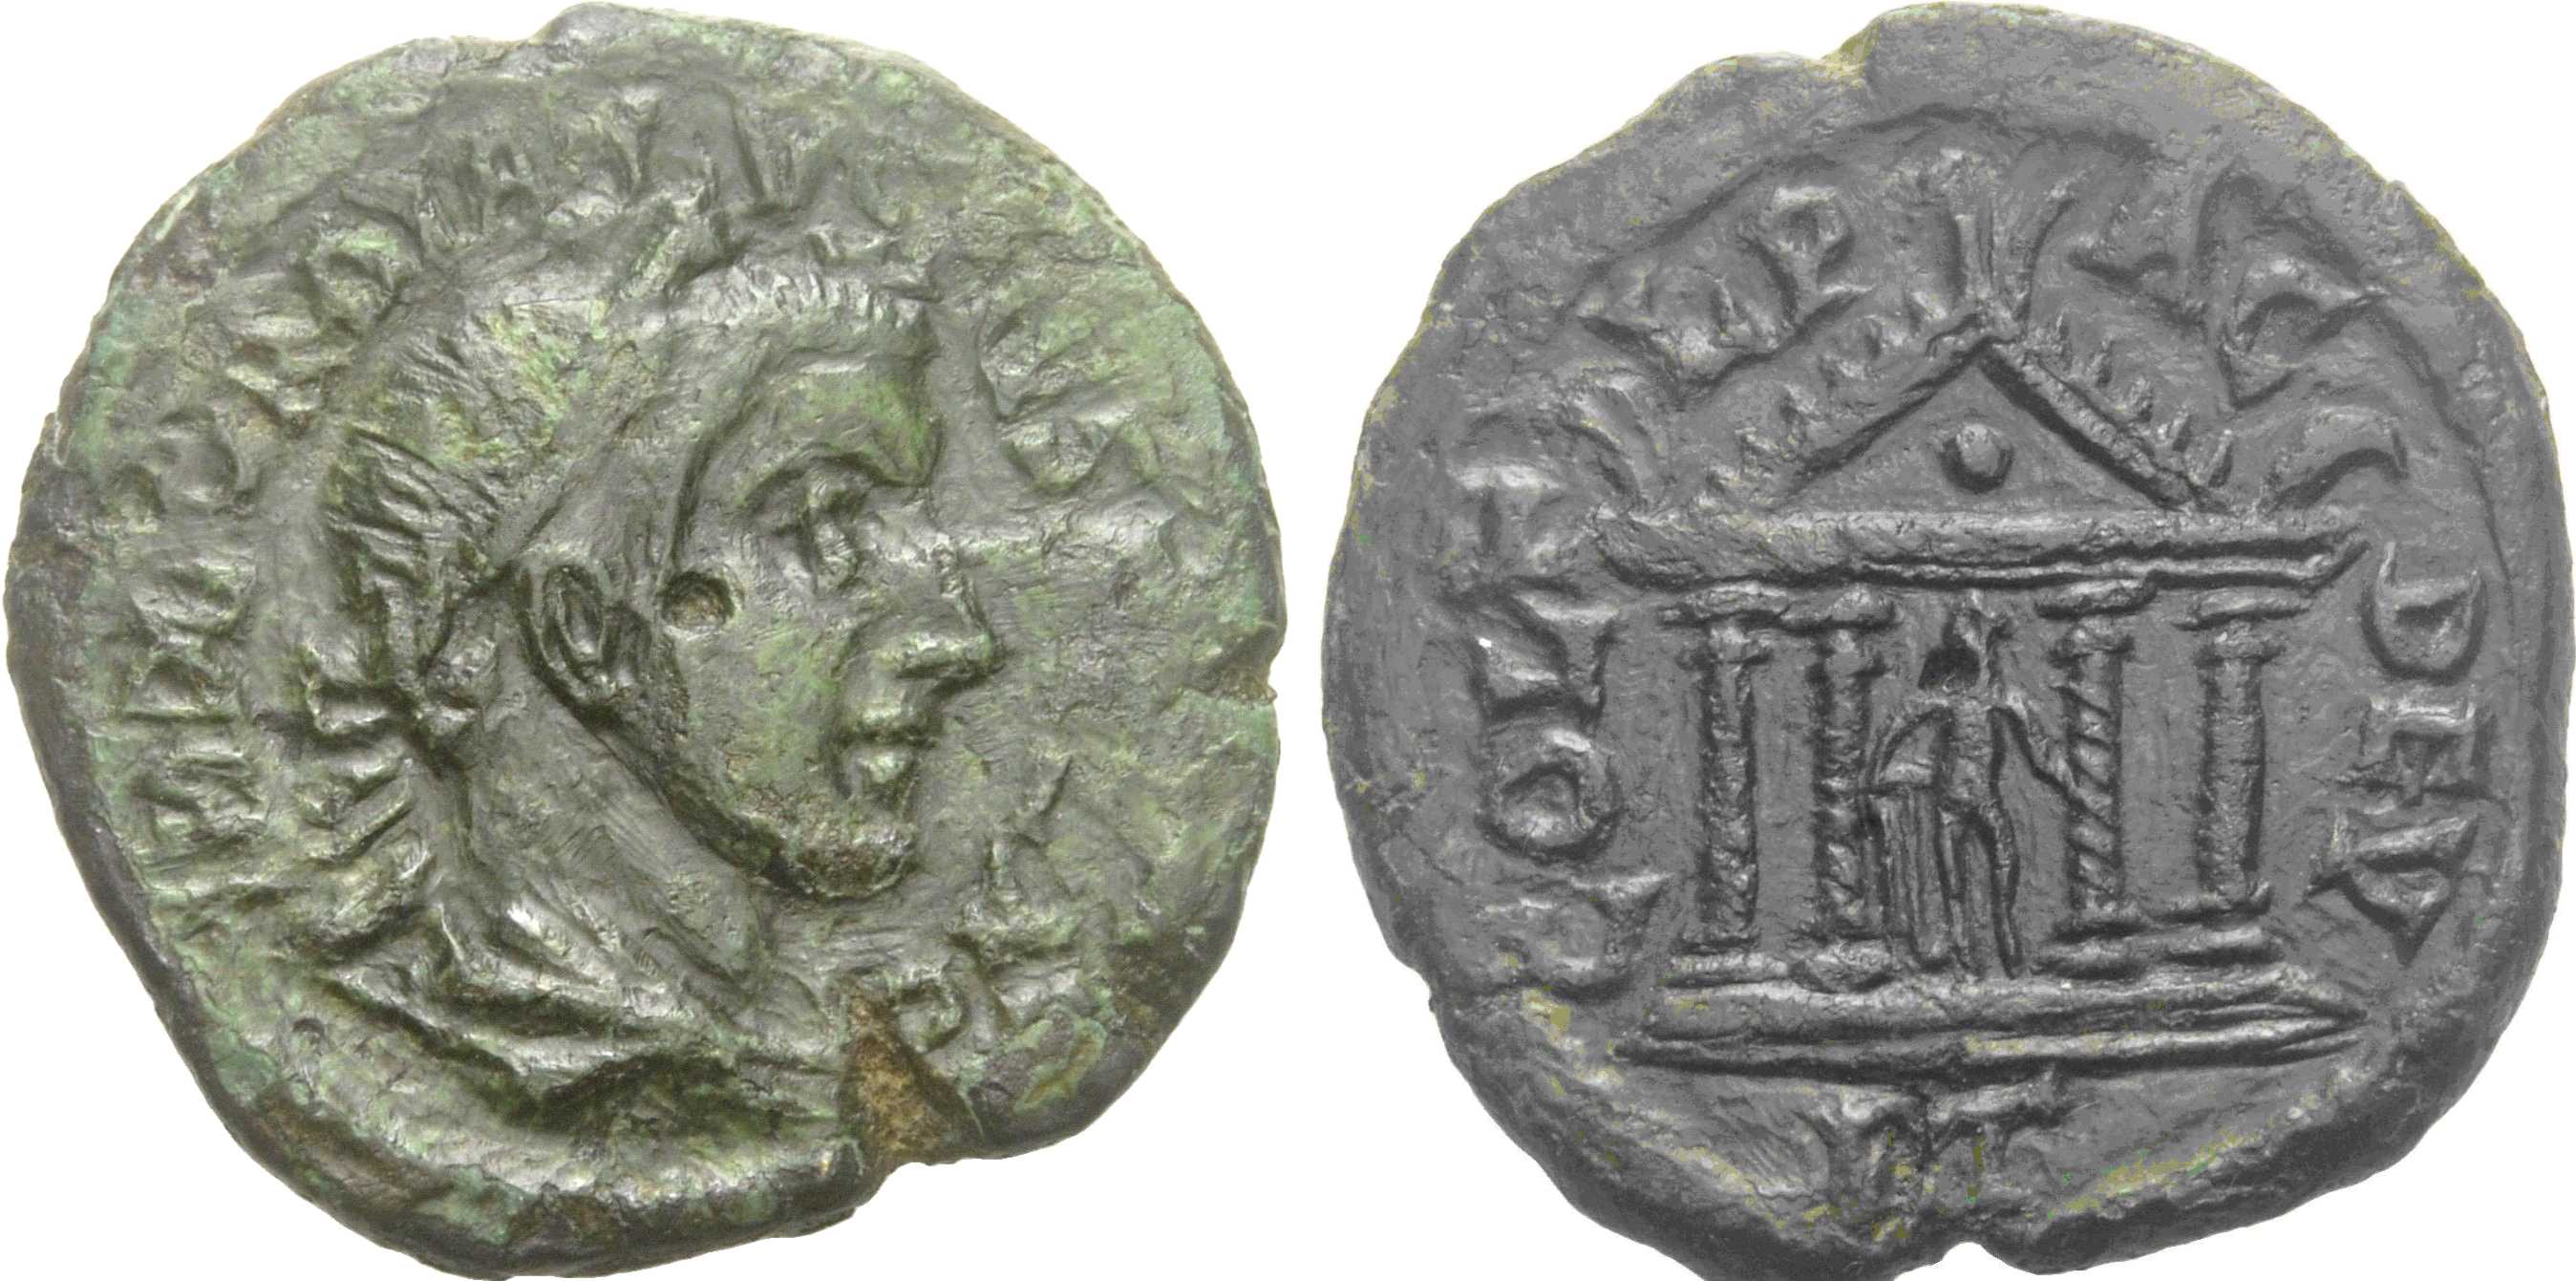 5561 Deultum Thracia Gordianus III AE